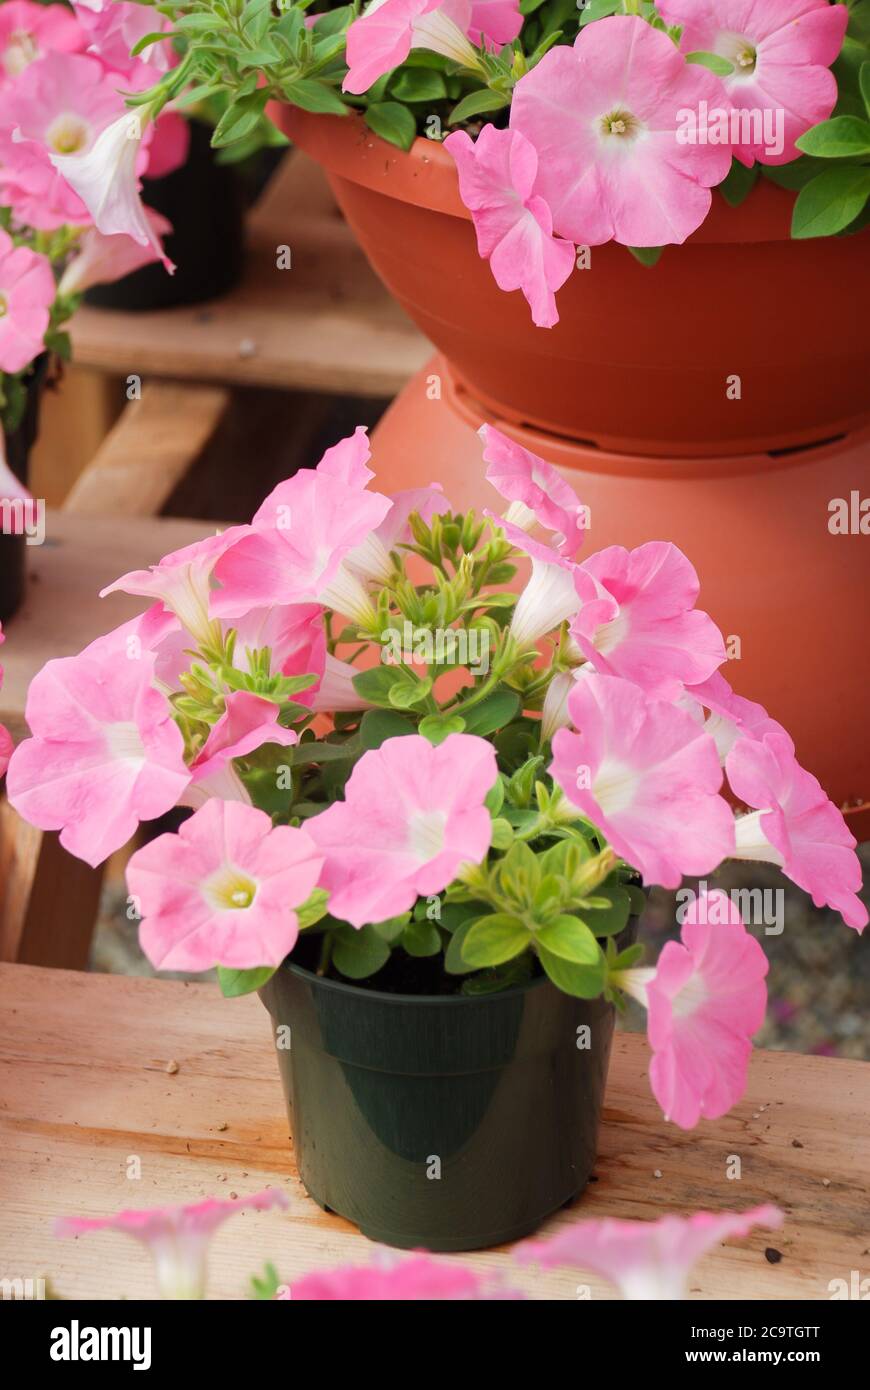 Pink Petunia, Petunias in the black pot, Pink petunia on a wood shelf.  Selective focus Stock Photo - Alamy